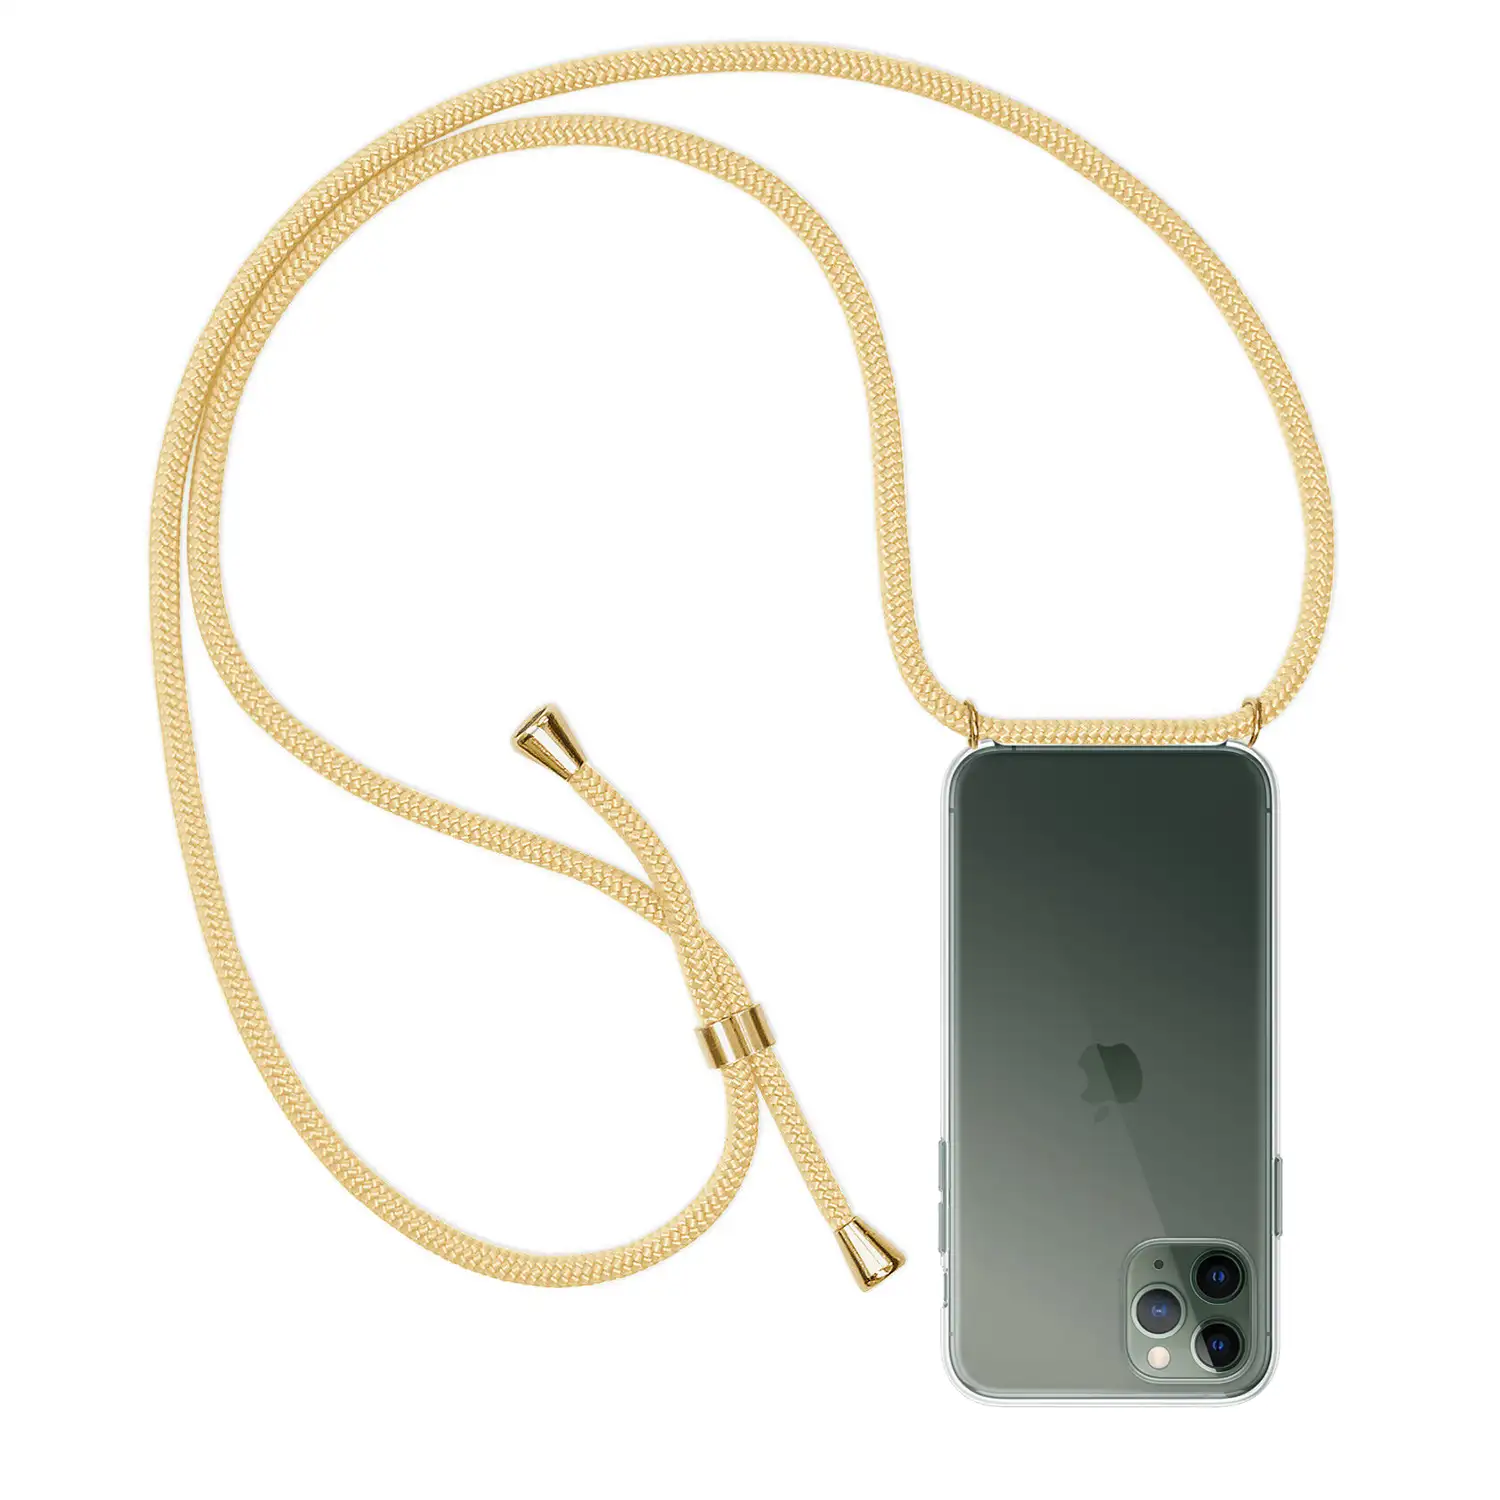 Carcasa transparente iPhone 11 Pro con colgante de nylon. Accesorio de moda, ajuste perfecto y máxima protección